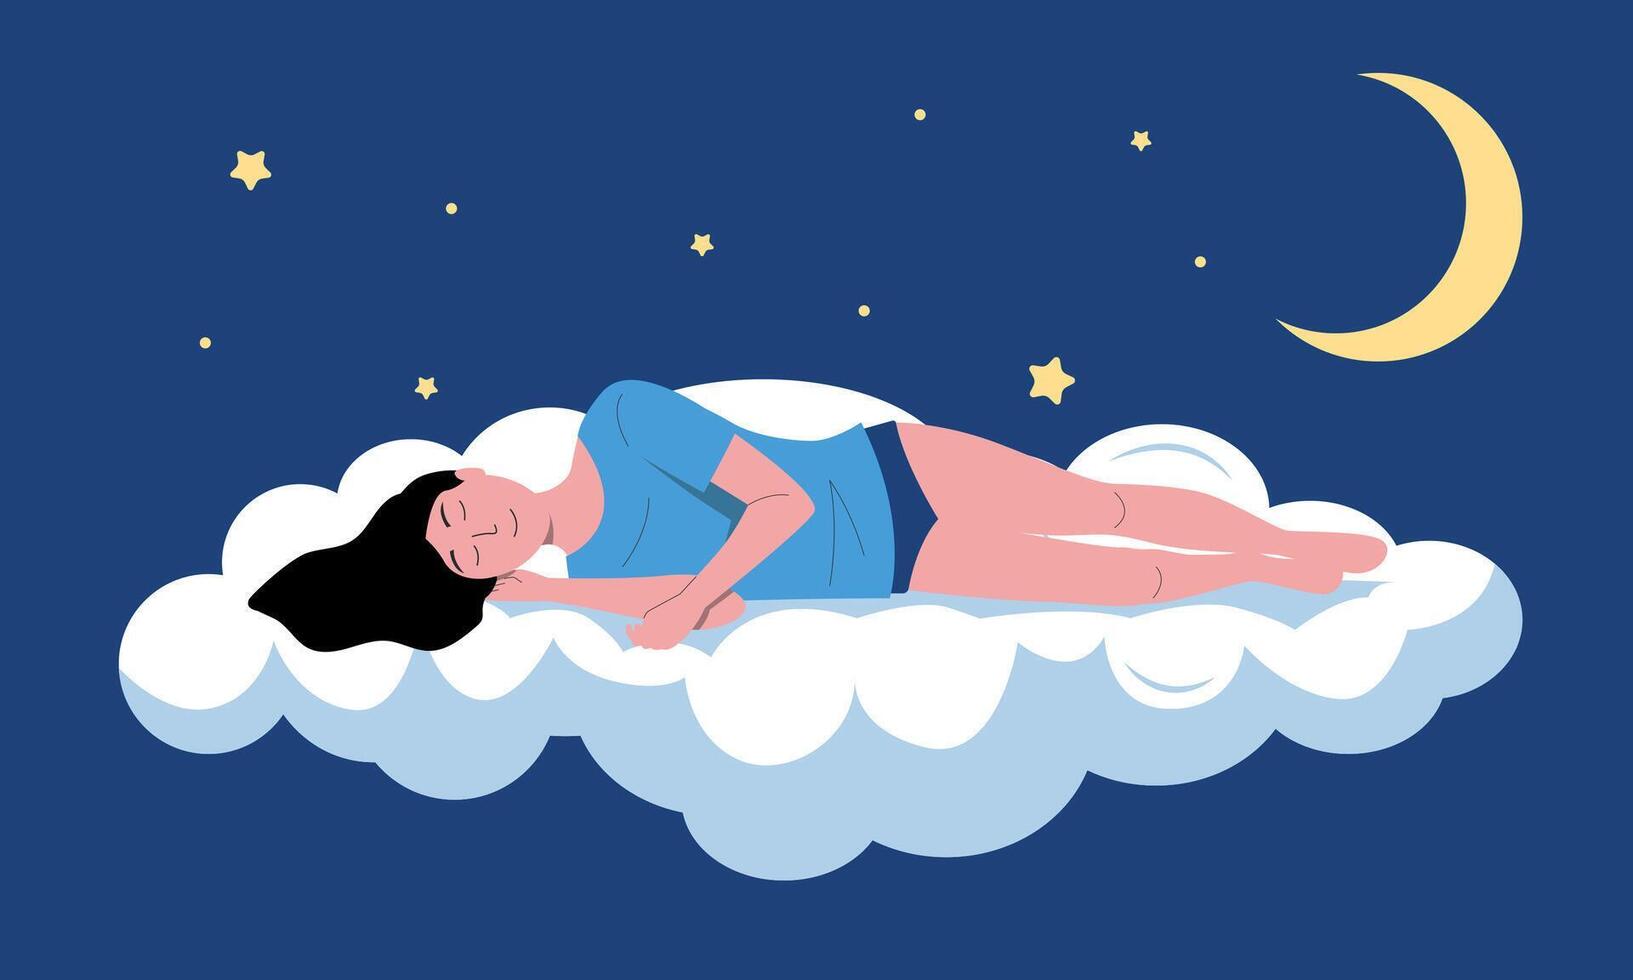 sovande person illustration. tecknad serie sovande och drömma ung flicka flygande i natt himmel, sömnlöshet eller sömn väl begrepp. vektor sovande kvinna karaktär bakgrund